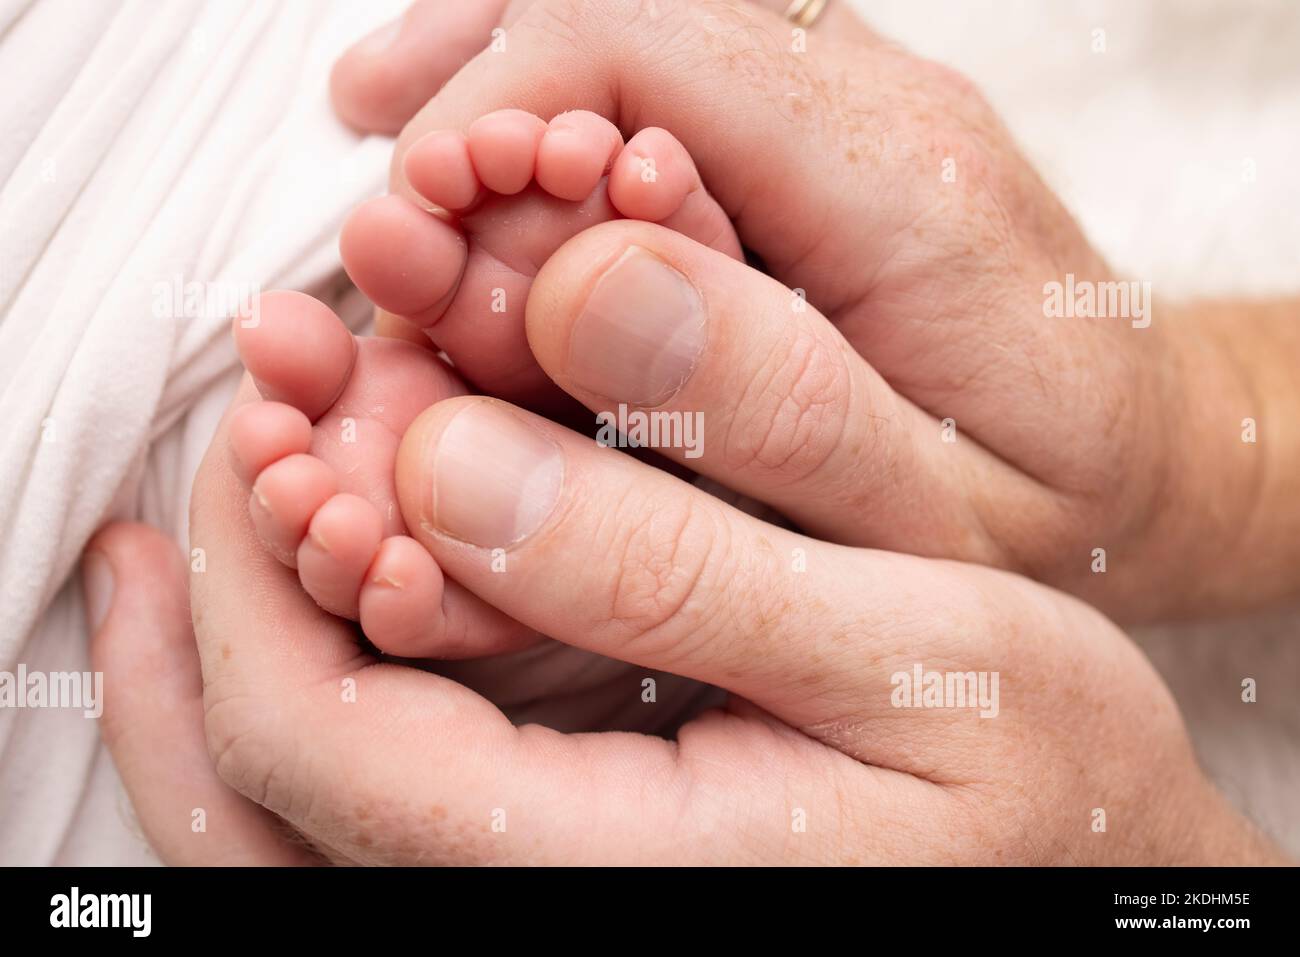 Mutter macht eine Massage auf ihrem Babyfuß. Nahaufnahme der Babyfüße in den Händen der Mutter. Stockfoto